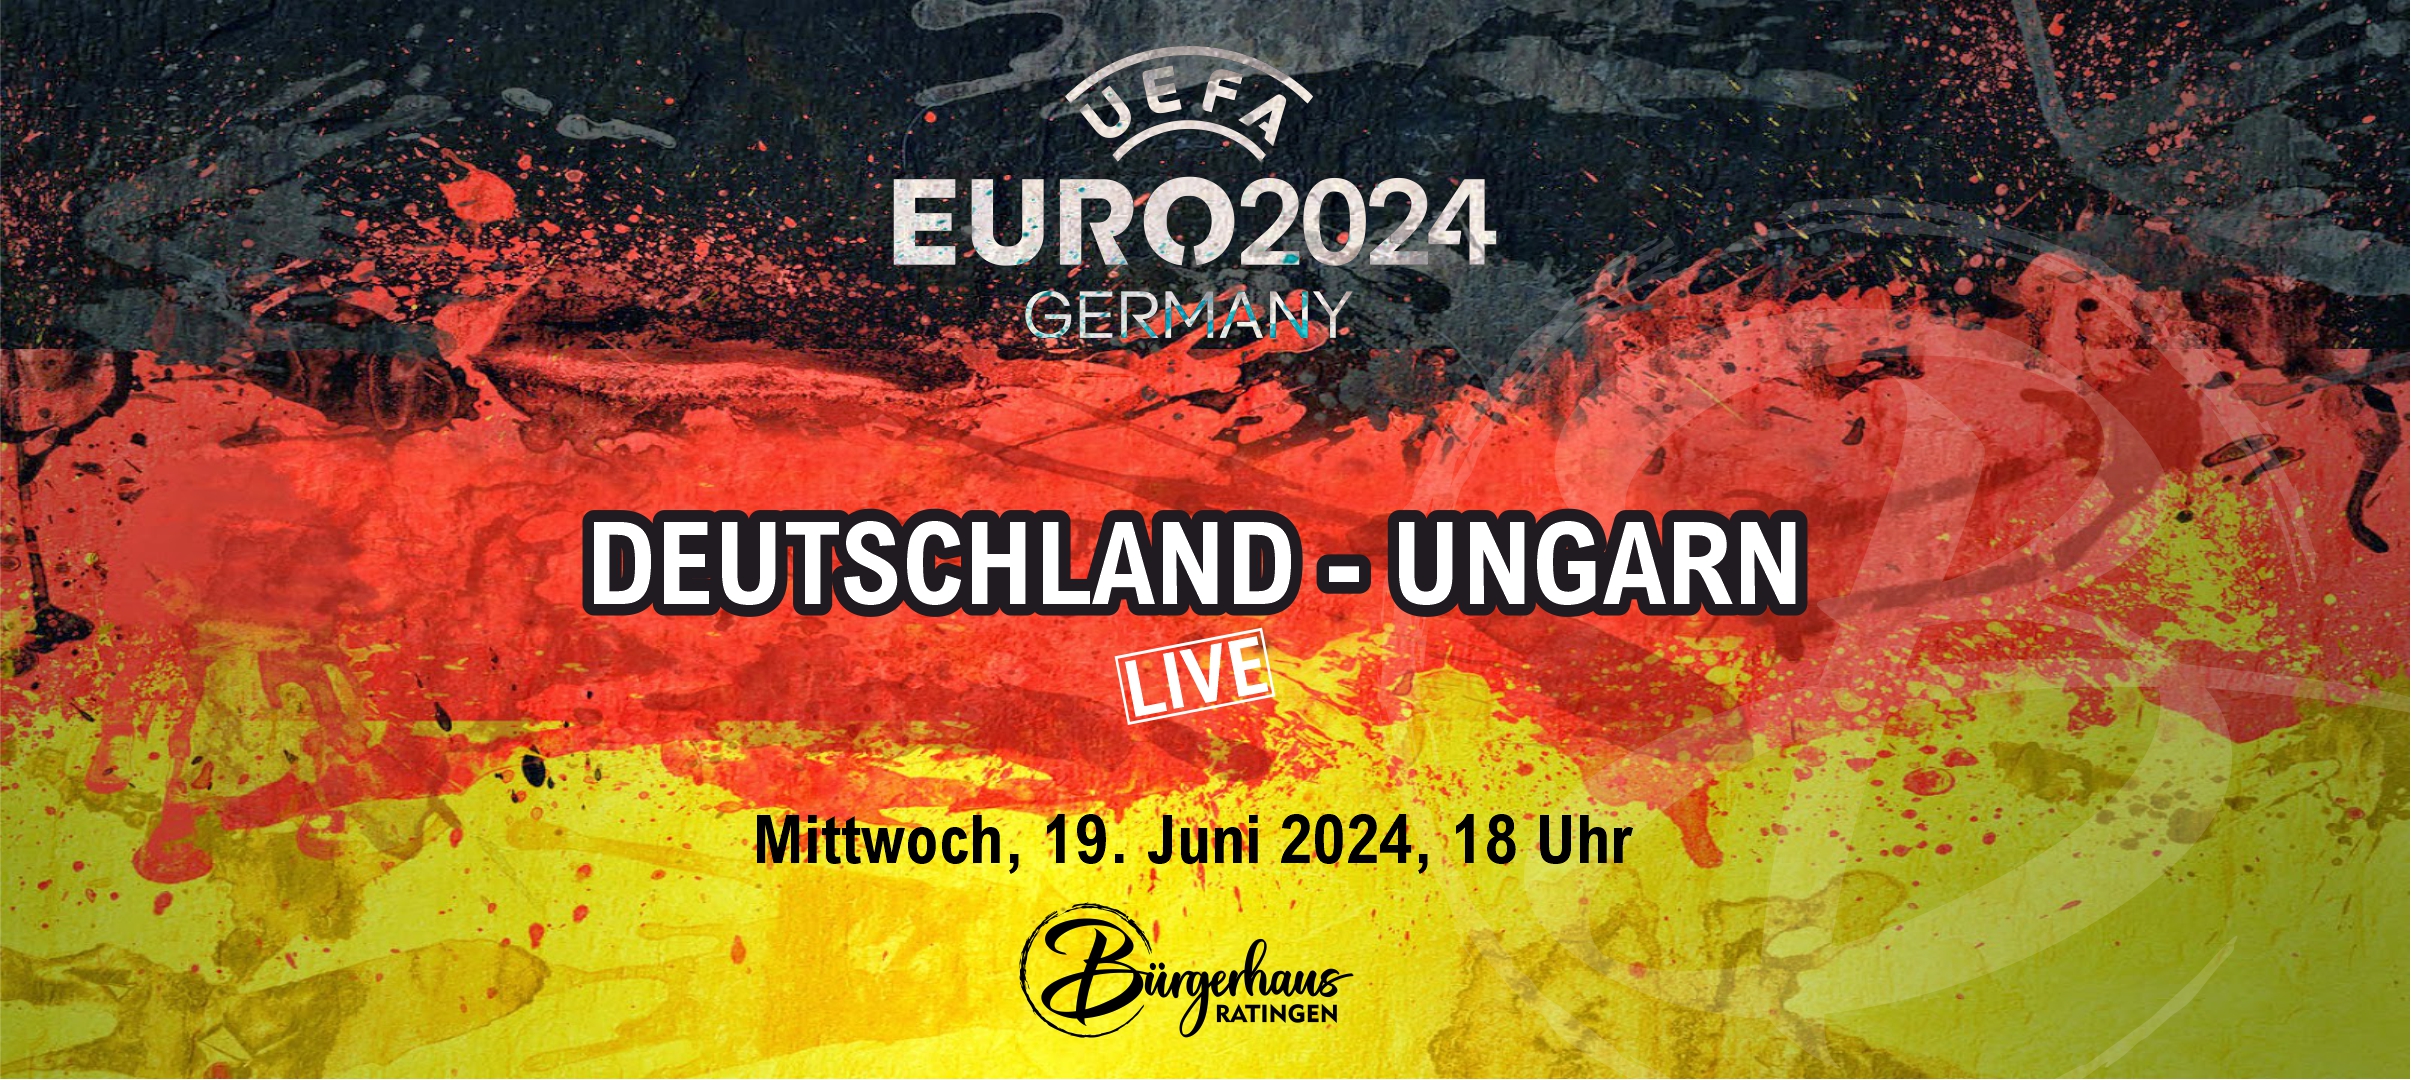 Euro 2024: DEUTSCHLAND - UNGARN